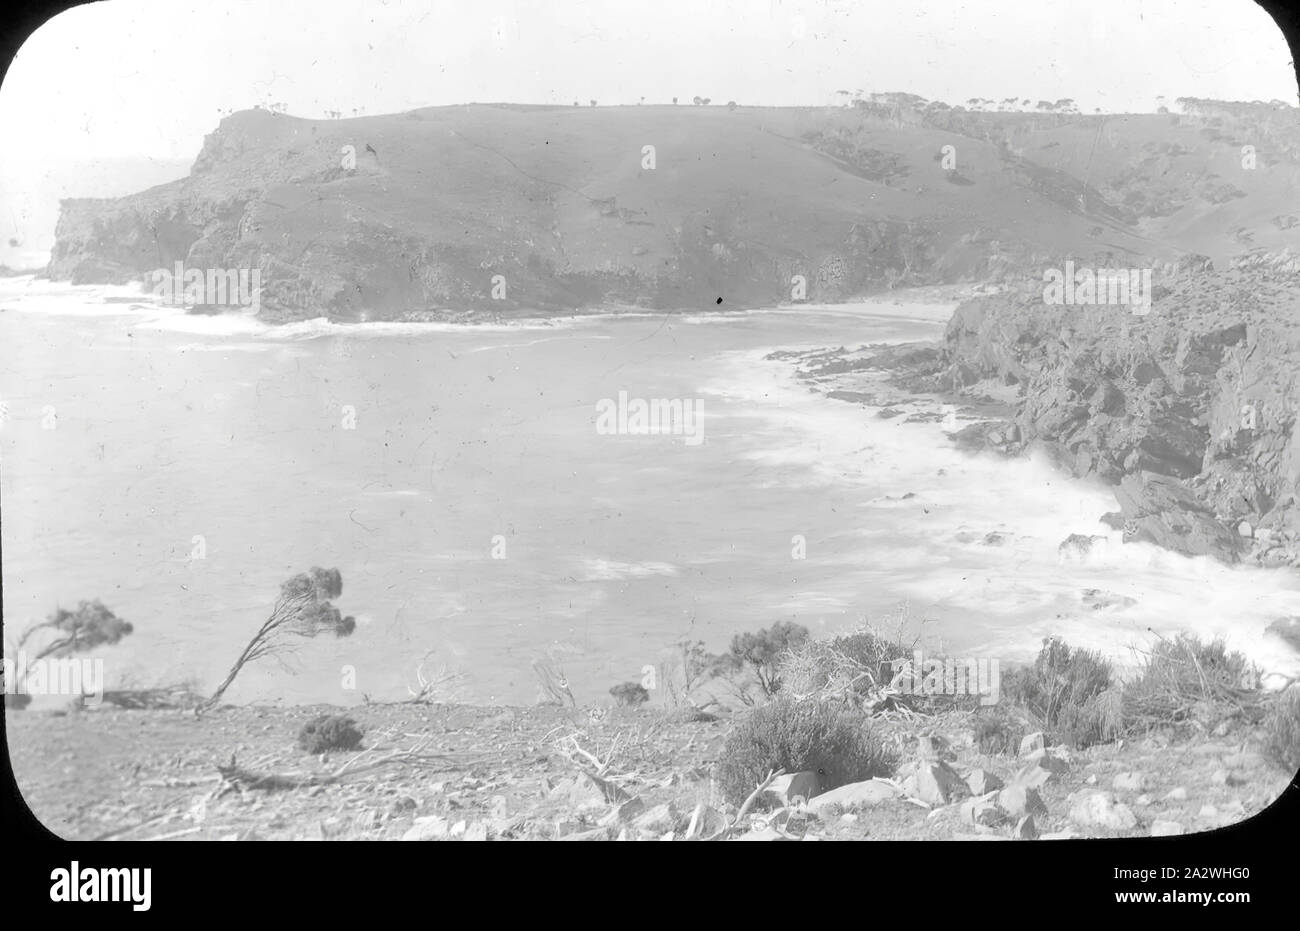 - Diapositive sur scène côtière, l'Australie, date inconnue, image en noir et blanc des falaises et une tête de pont photographié par A.J. Campbell Banque D'Images